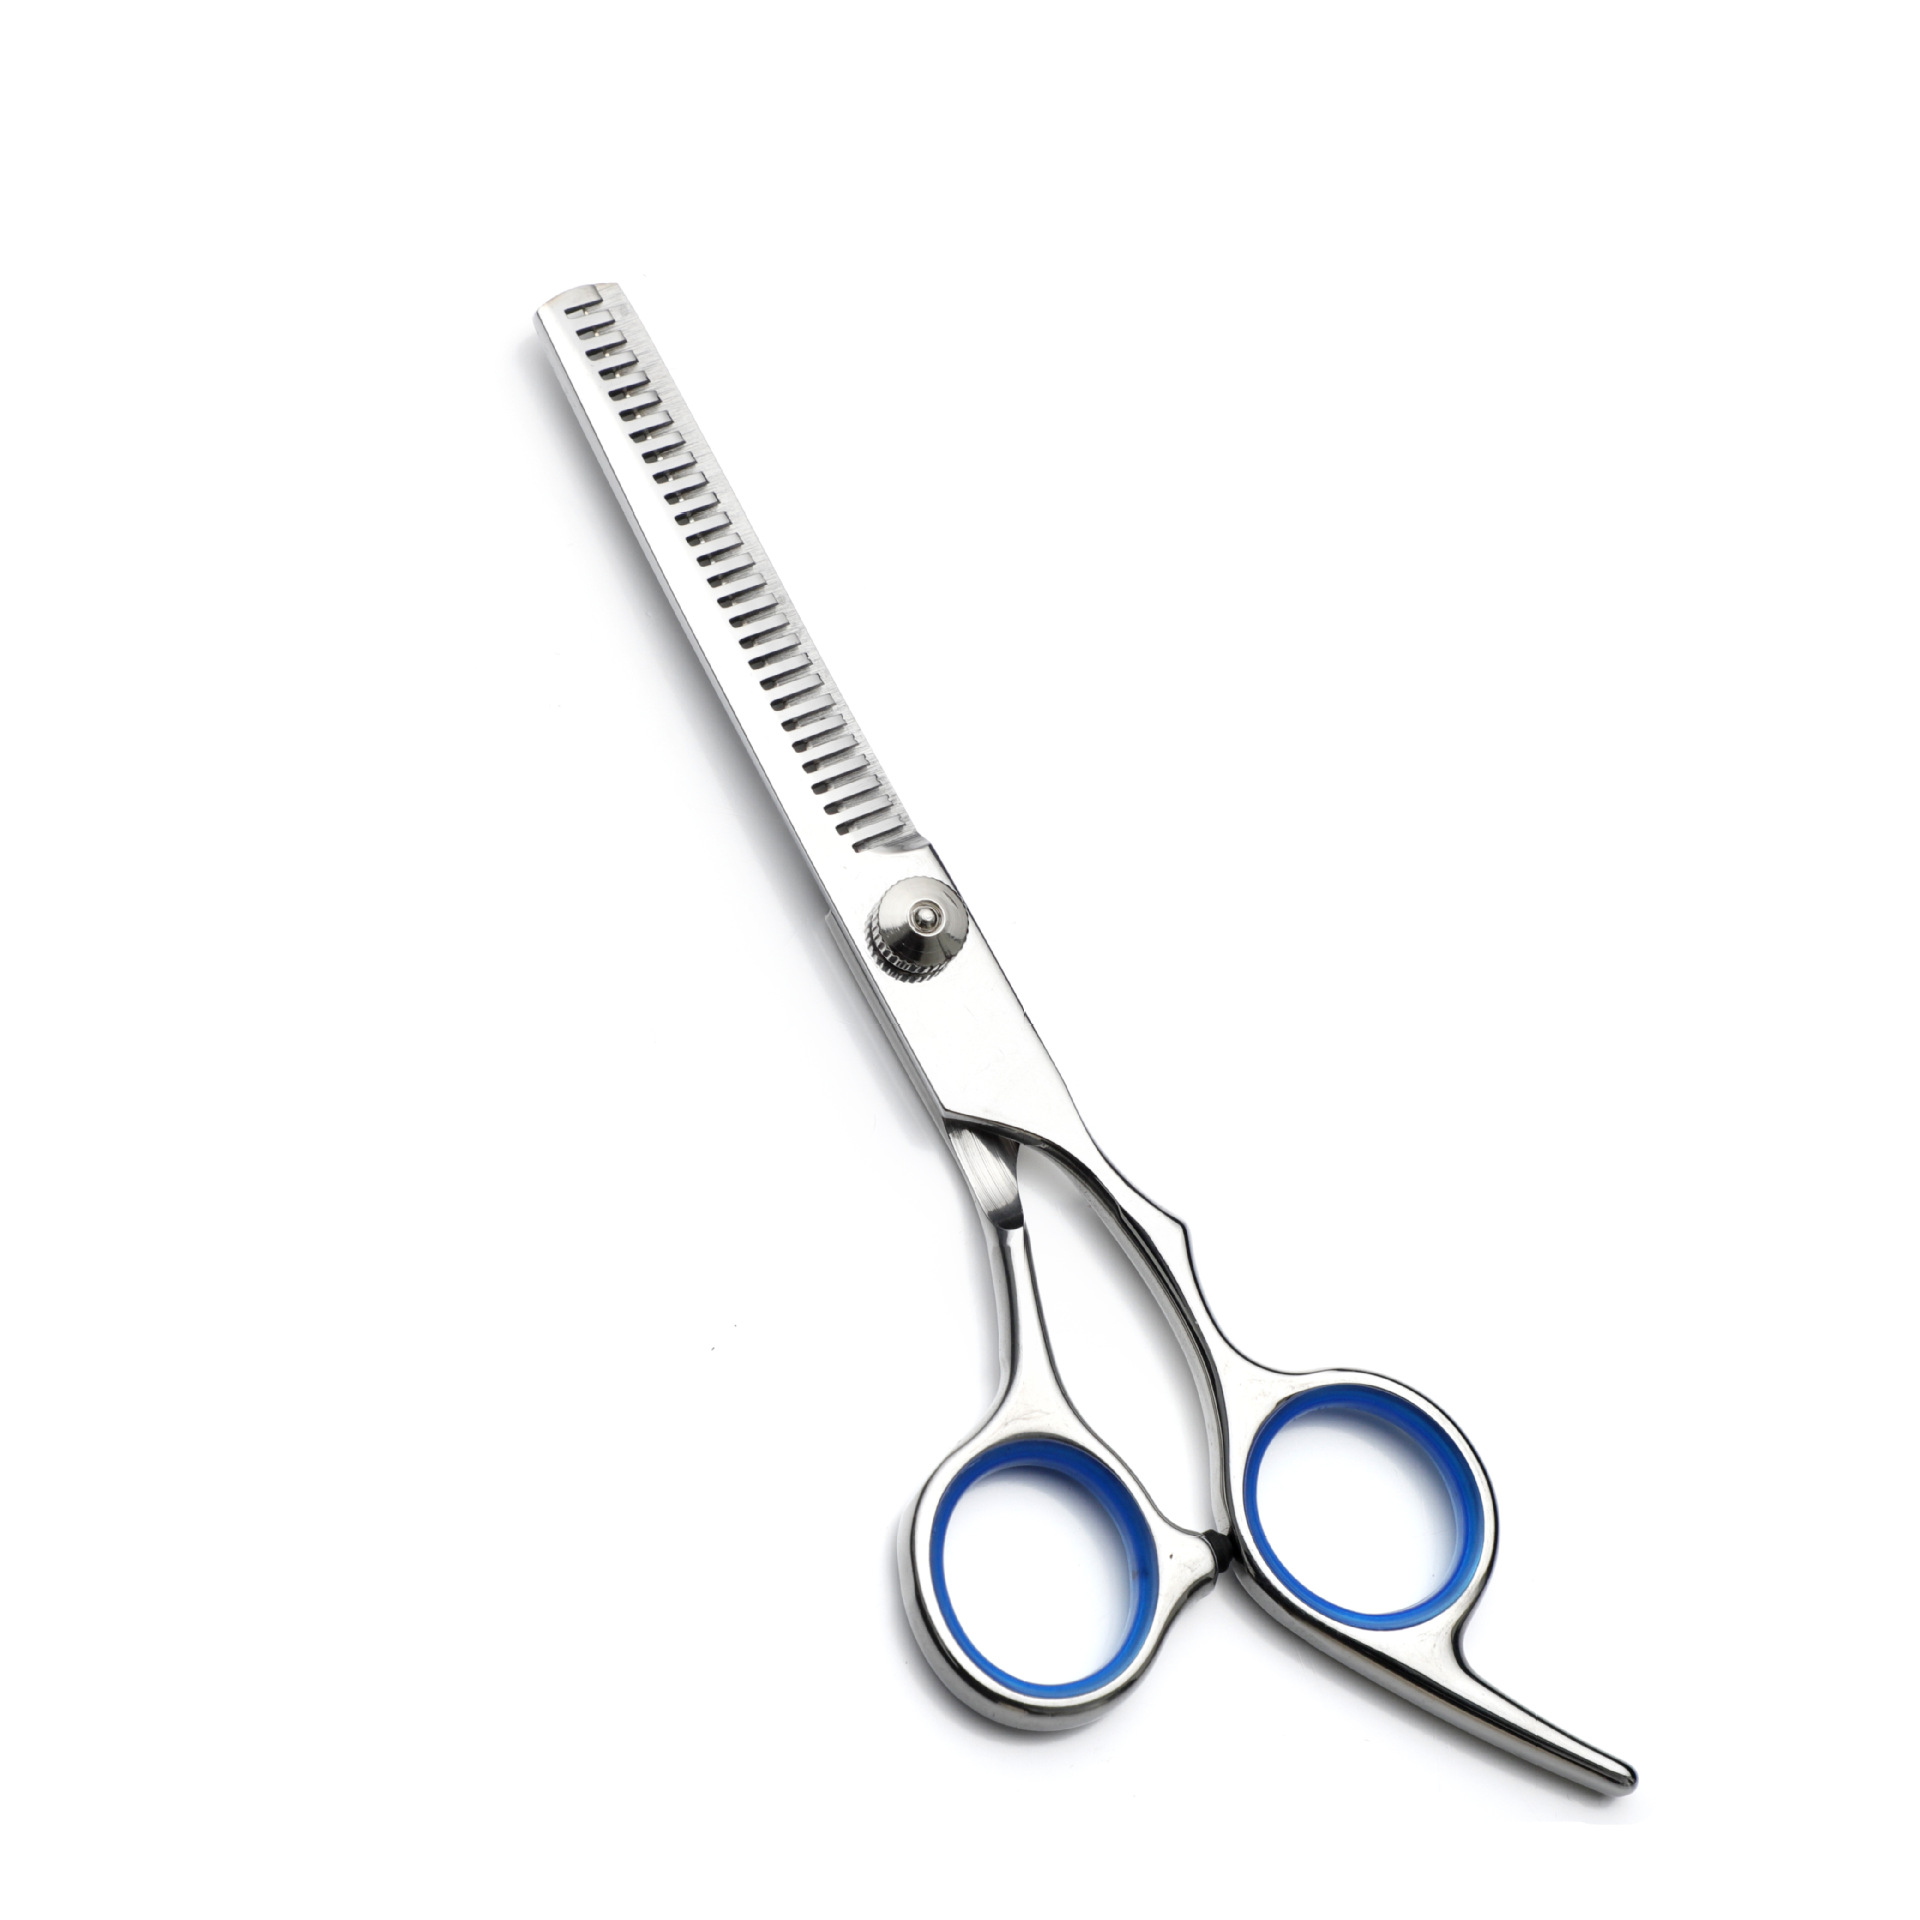 Dental scissors [White screw and blue ring]